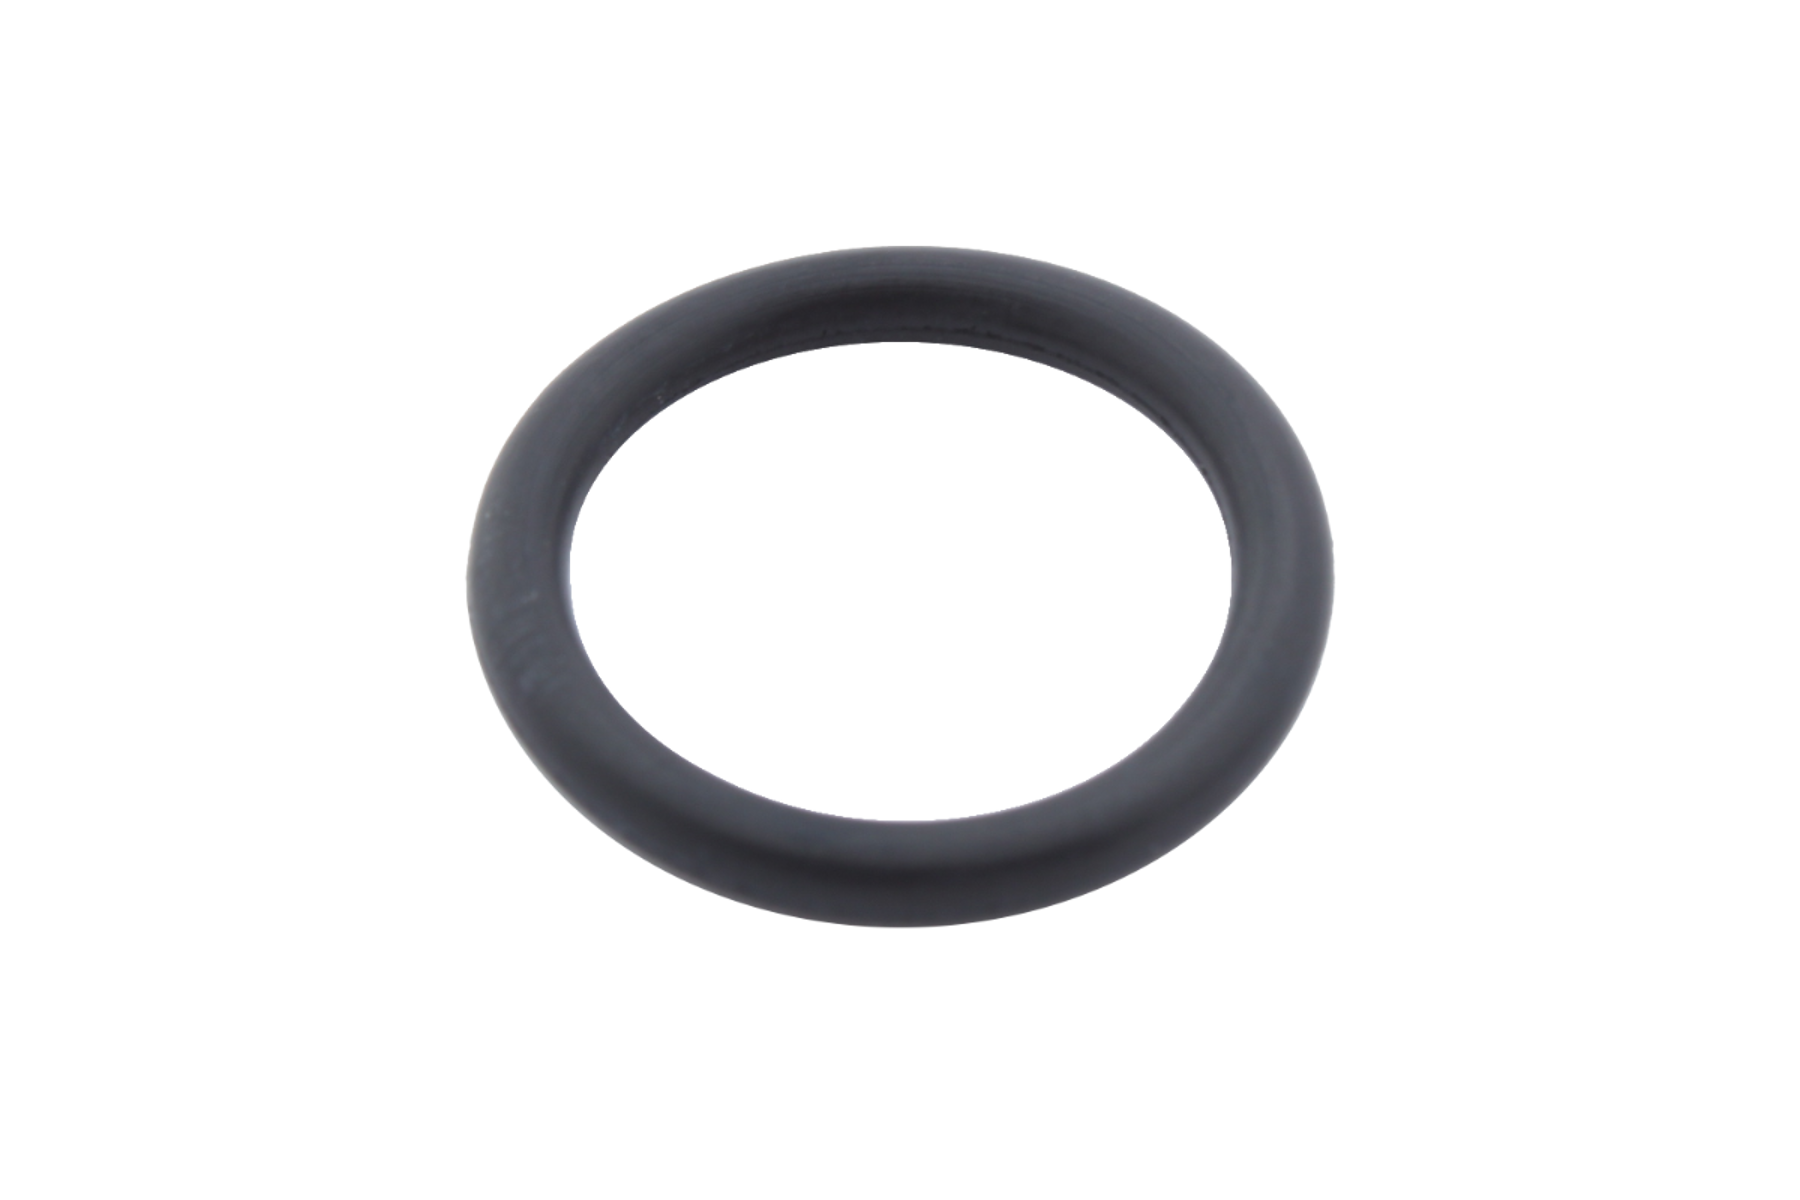  O-Ring für Temperaturfühler Ø 5,0 und Ø 5,2